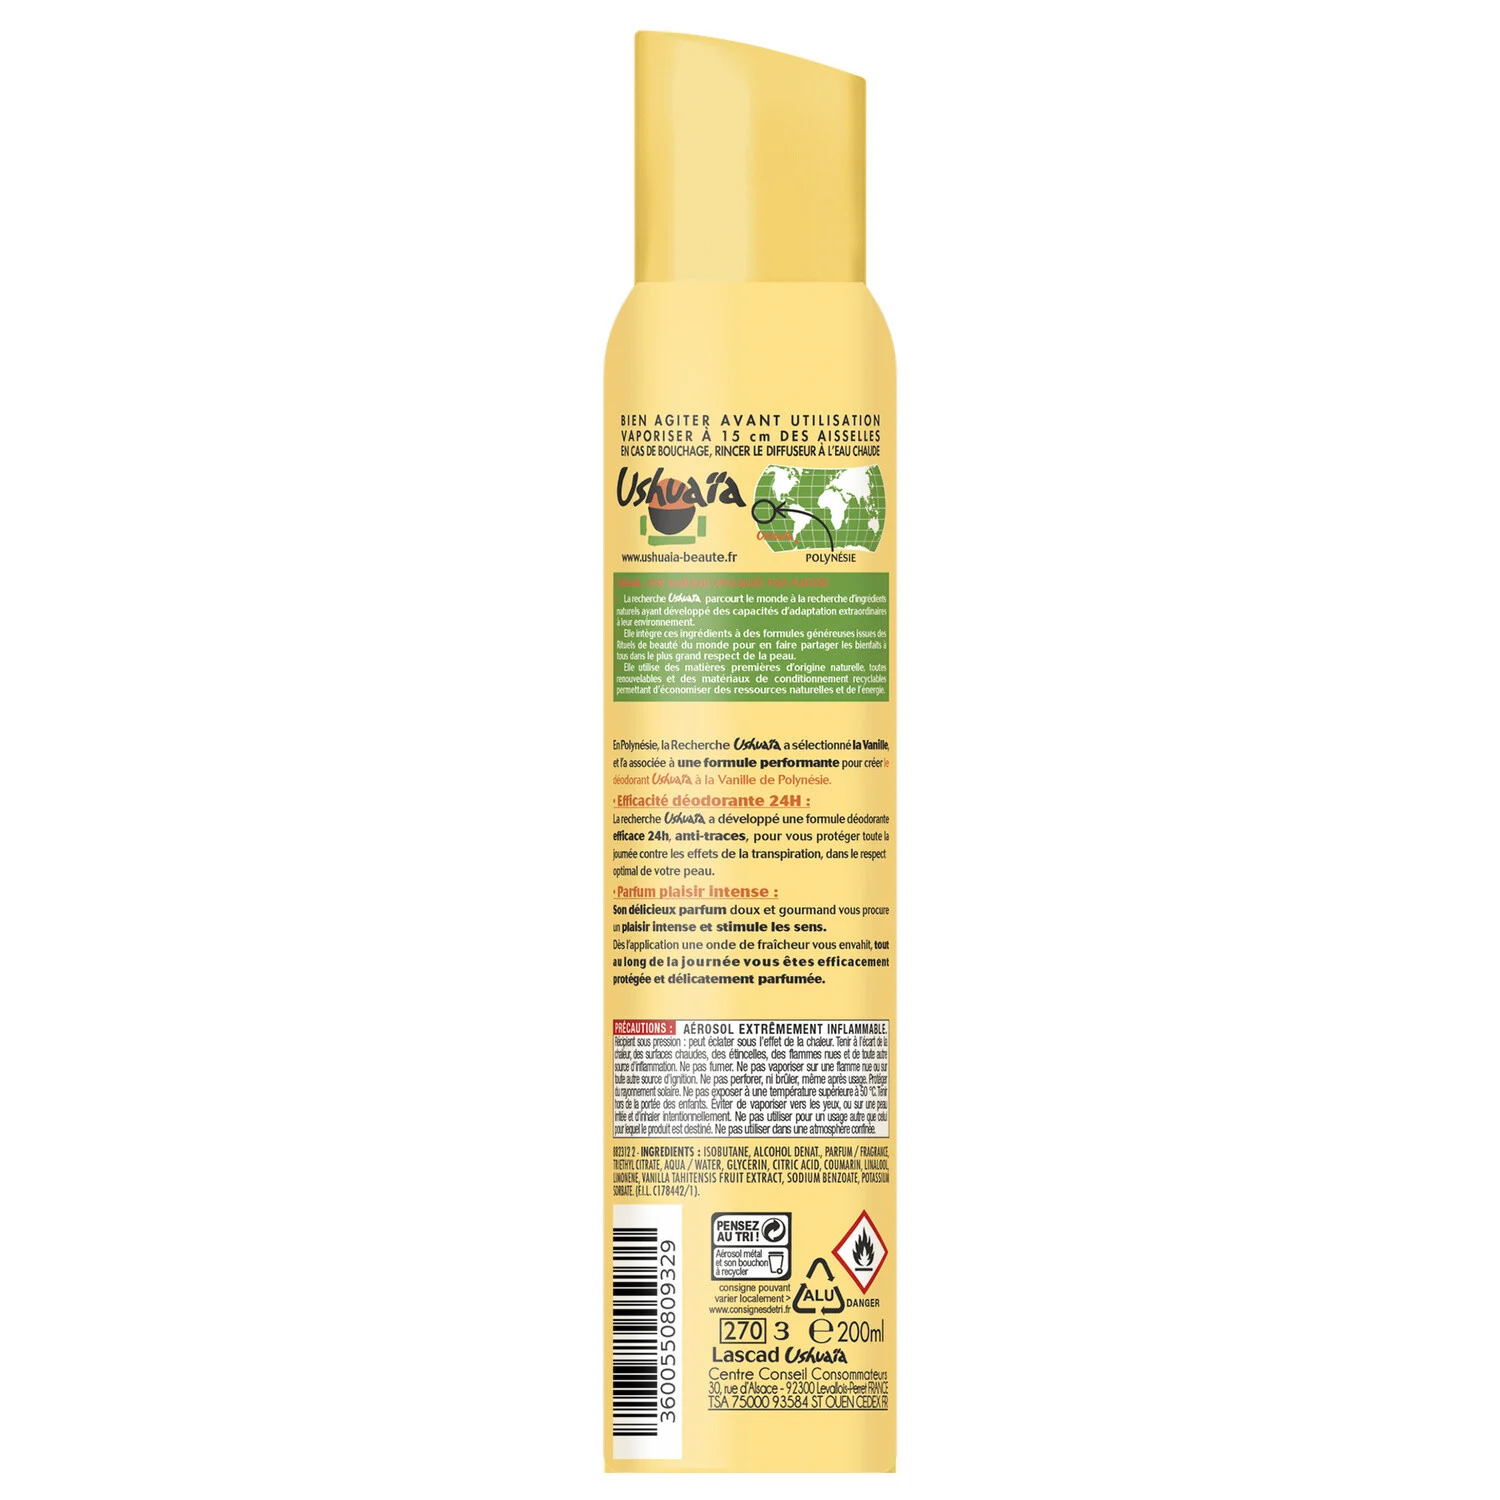 Ushuaia Spray deodorant Vanilla 200ml